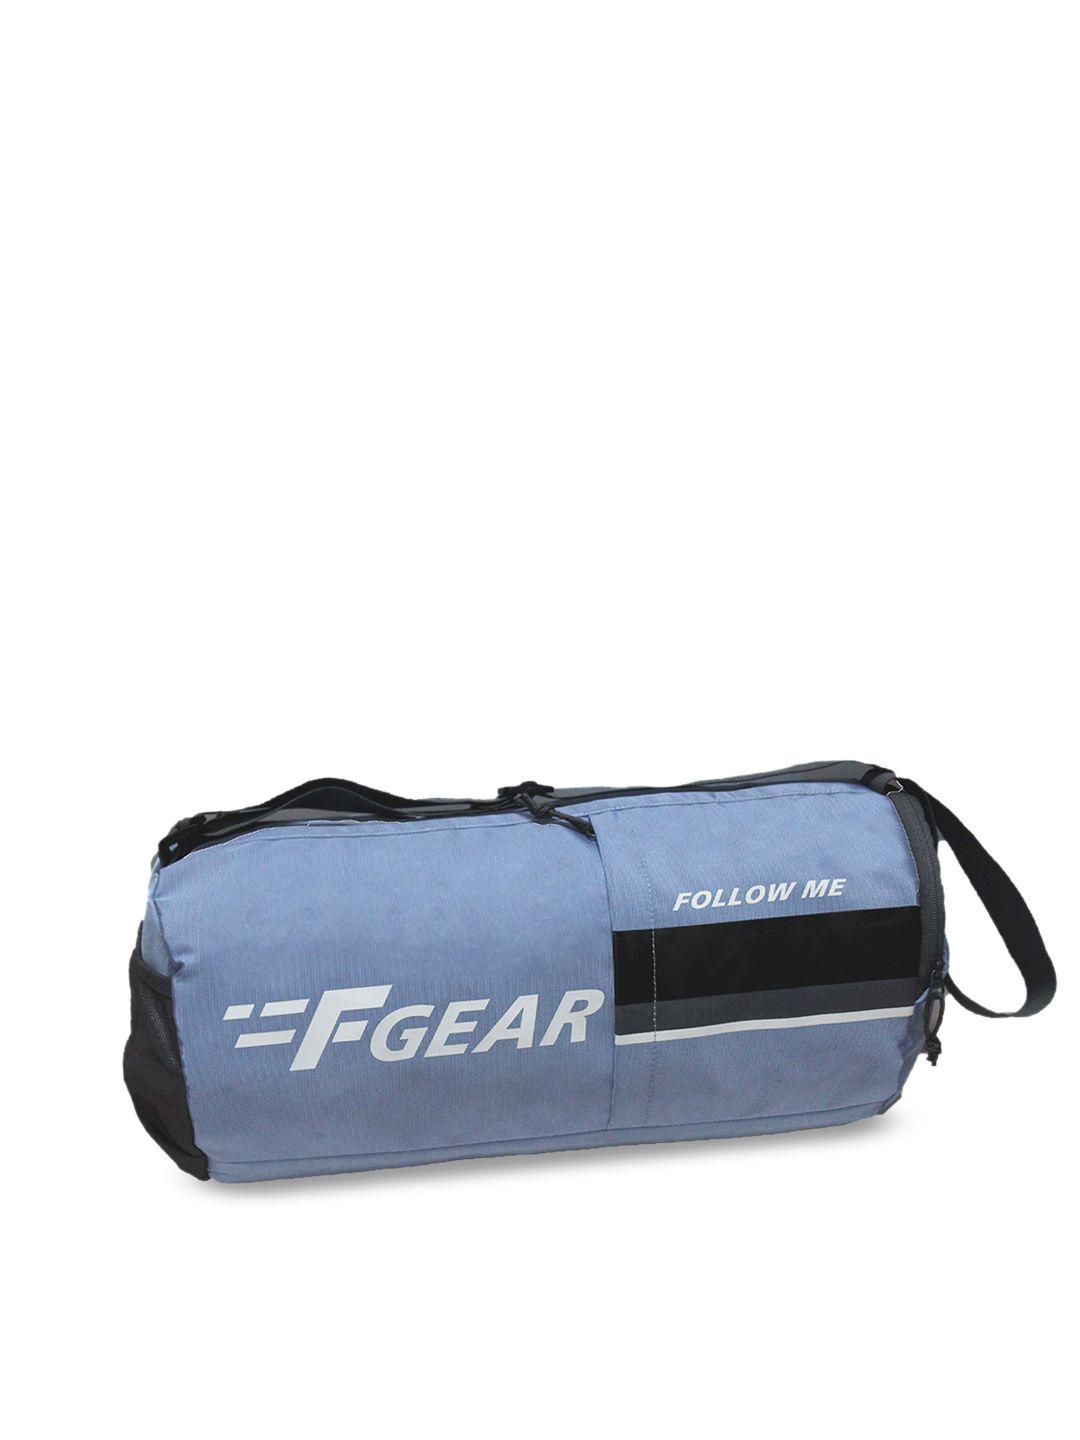 f gear blue & white solid gym duffel bag